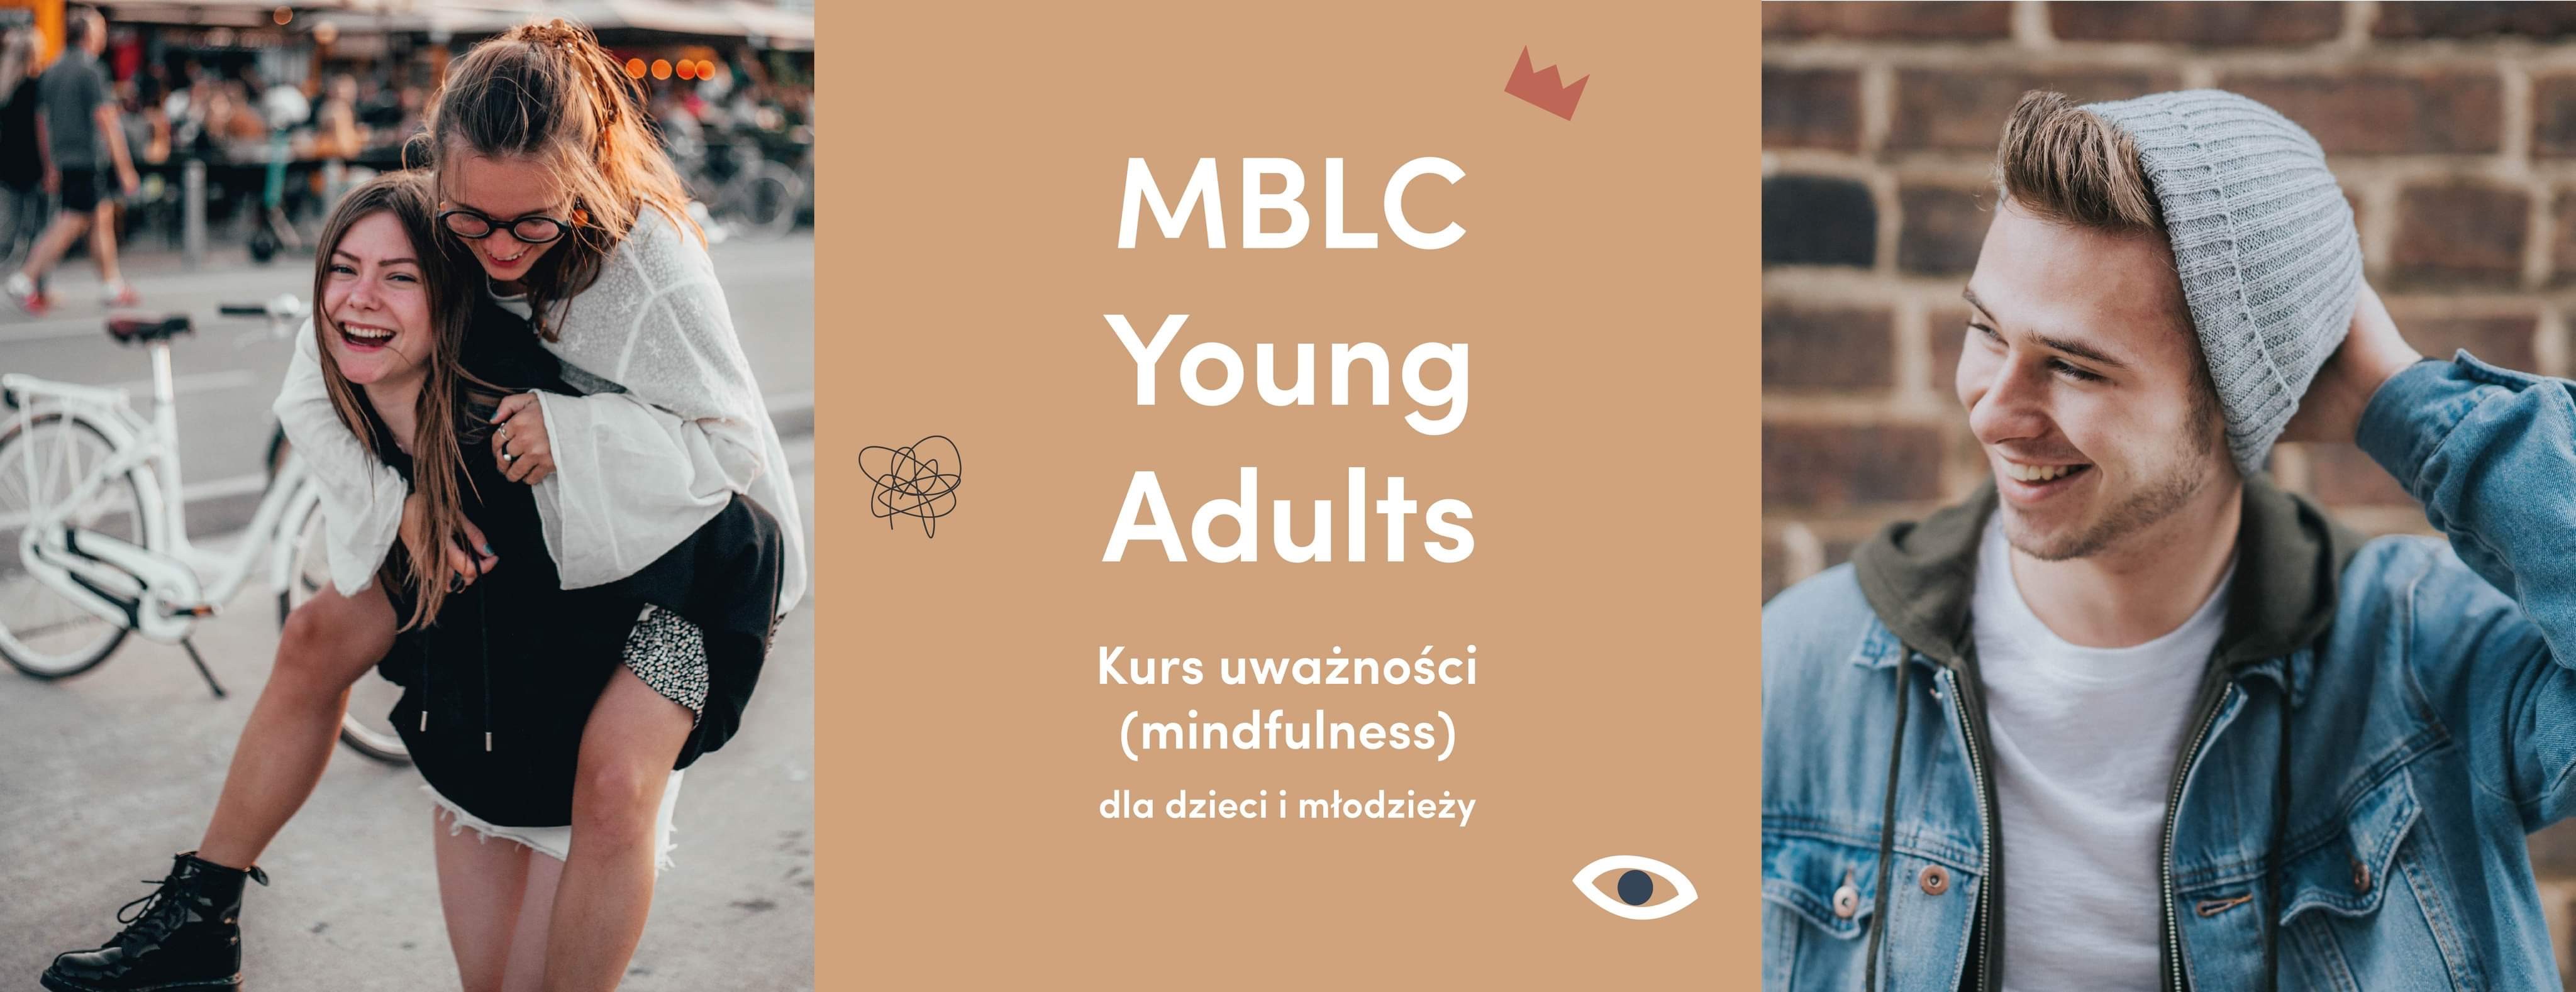 Kurs uważności dla nastolatków i młodzieży MBLC-YA Grupa I 12-16 lat Wt.15:30-16:25